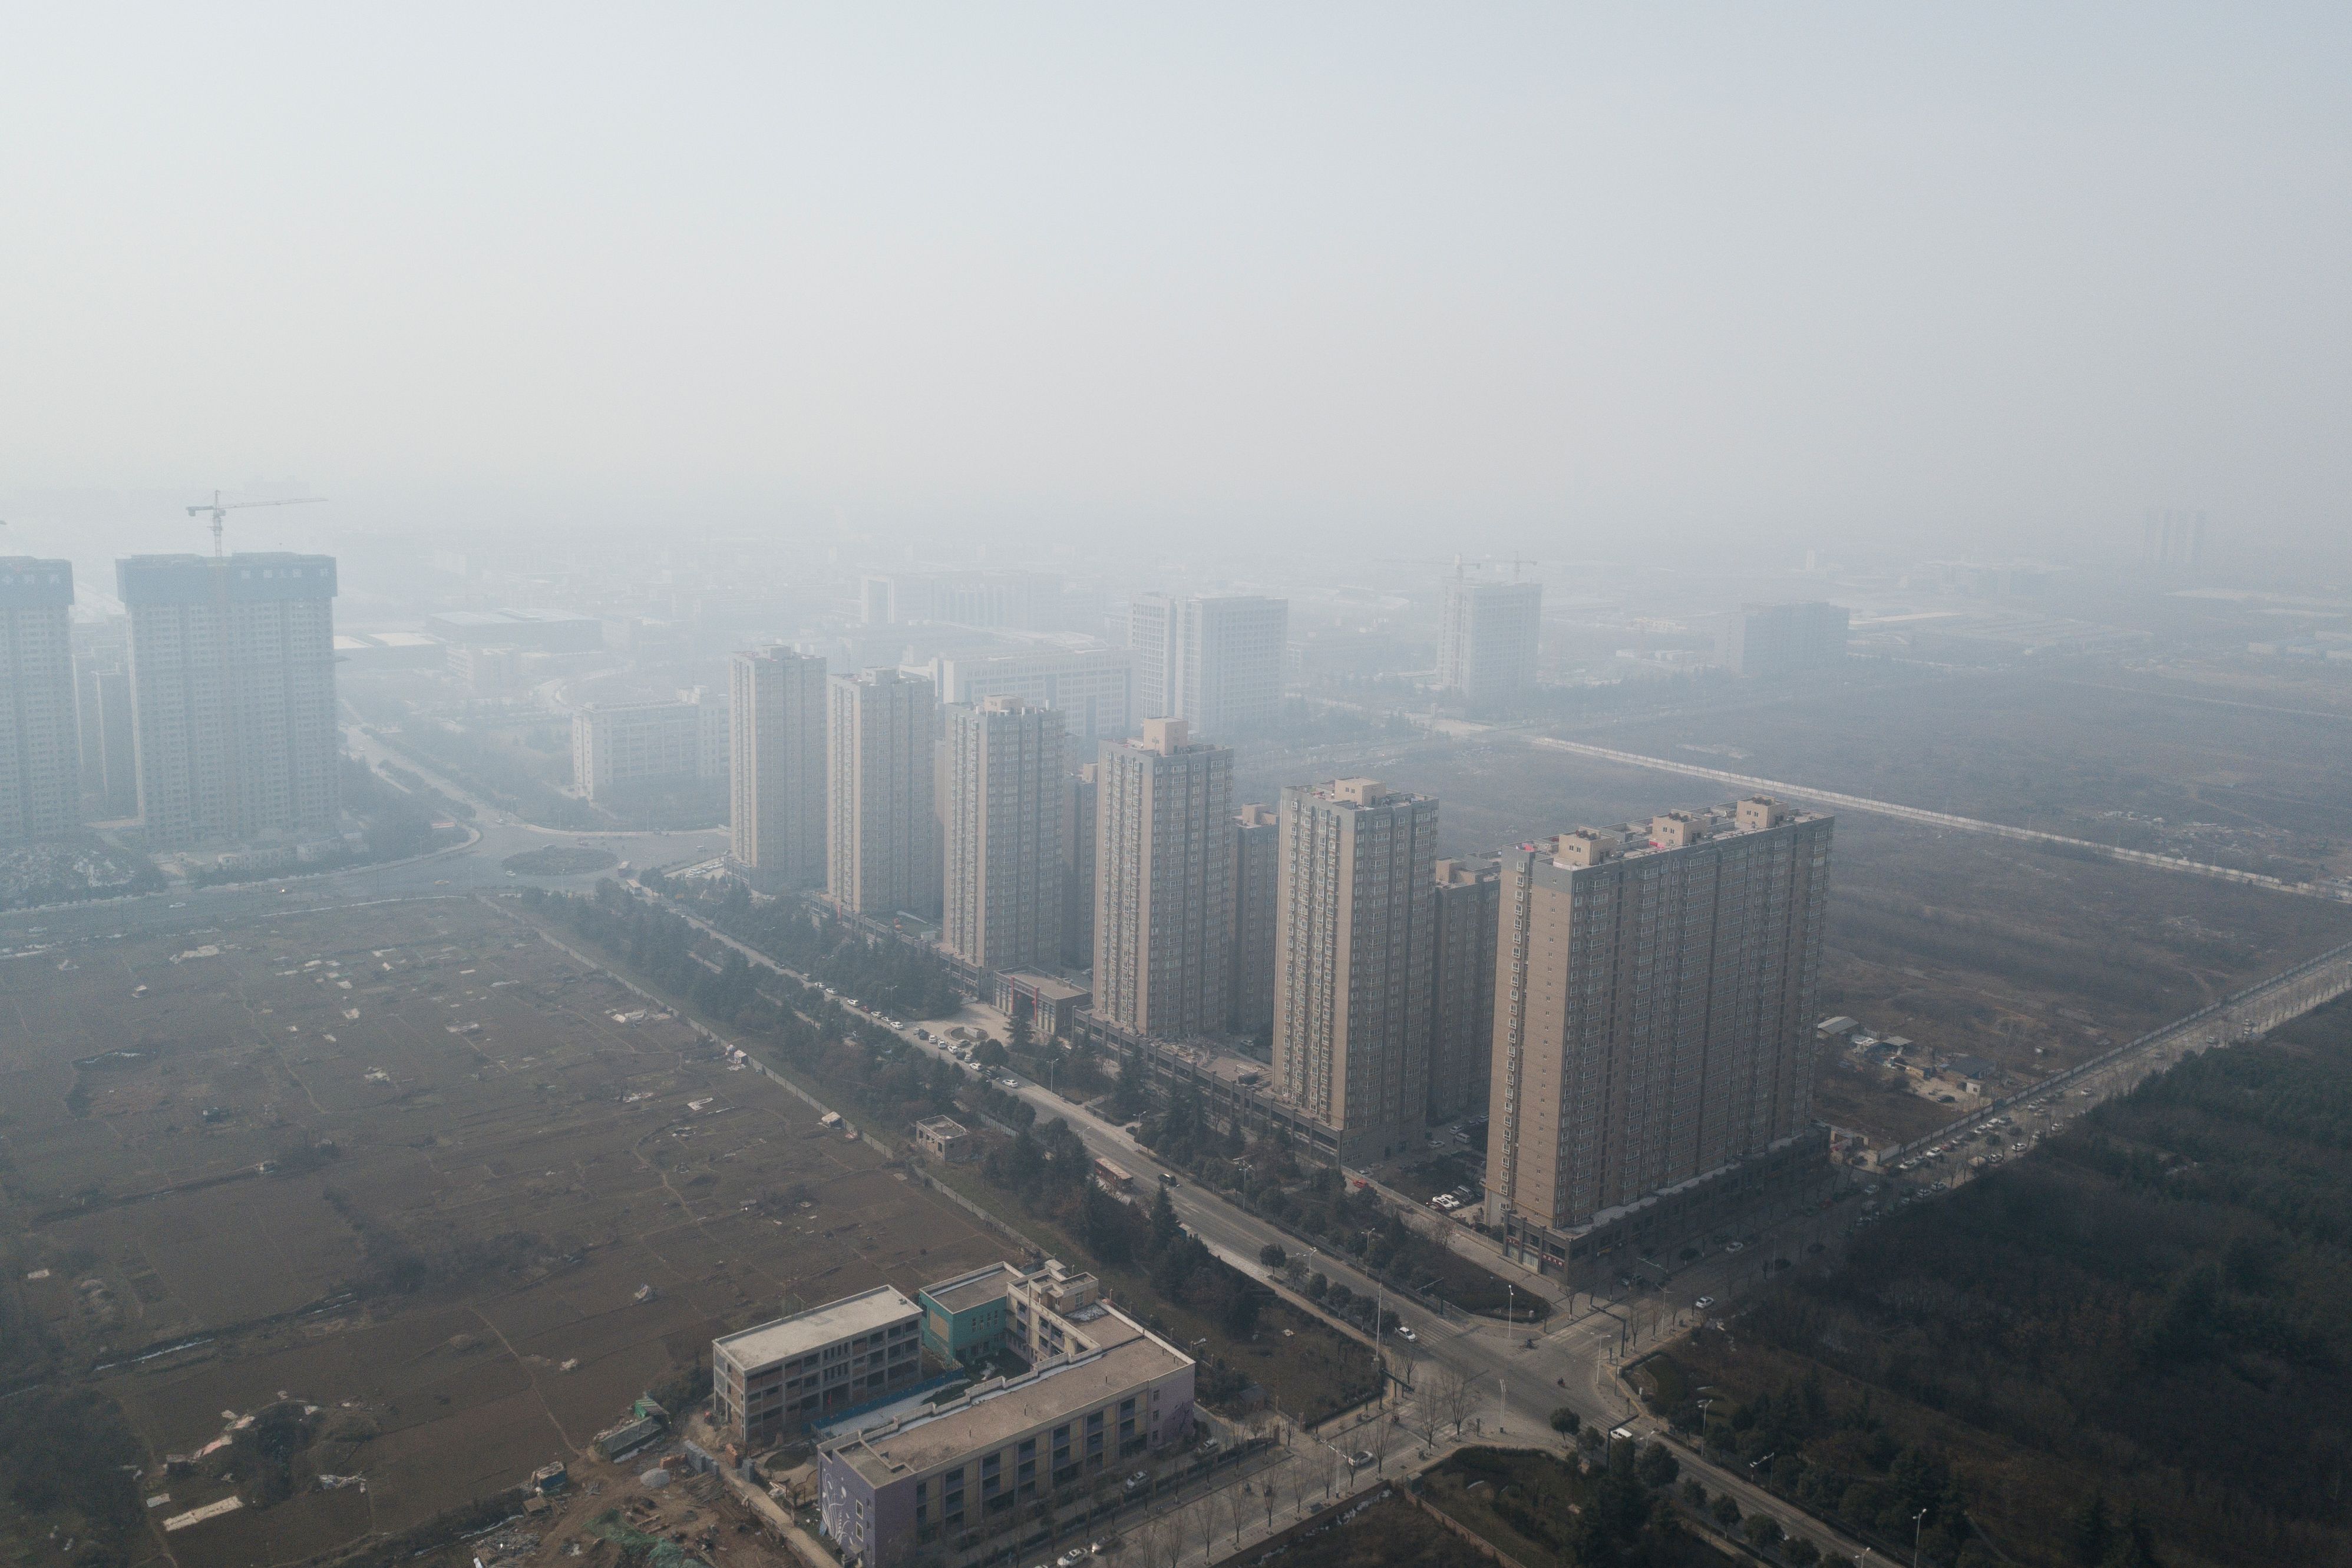 الضباب الدخانى يغطى سماء الصين